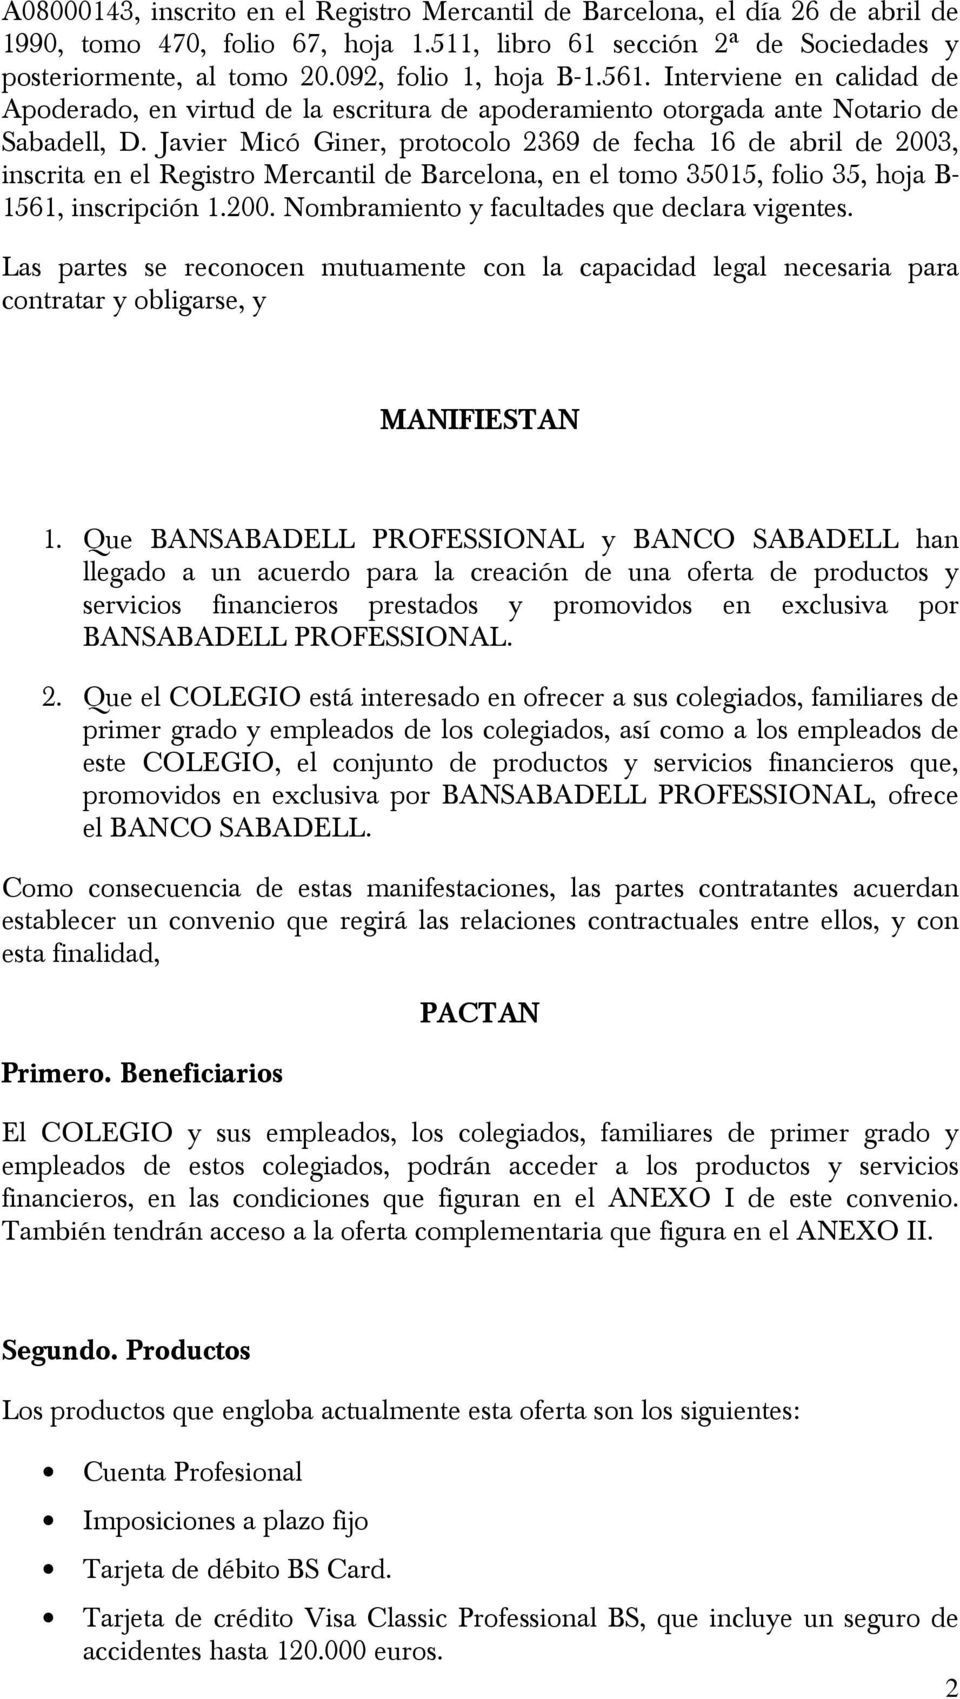 Javier Micó Giner, protocolo 2369 de fecha 16 de abril de 2003, inscrita en el Registro Mercantil de Barcelona, en el tomo 35015, folio 35, hoja B- 1561, inscripción 1.200. Nombramiento y facultades que declara vigentes.